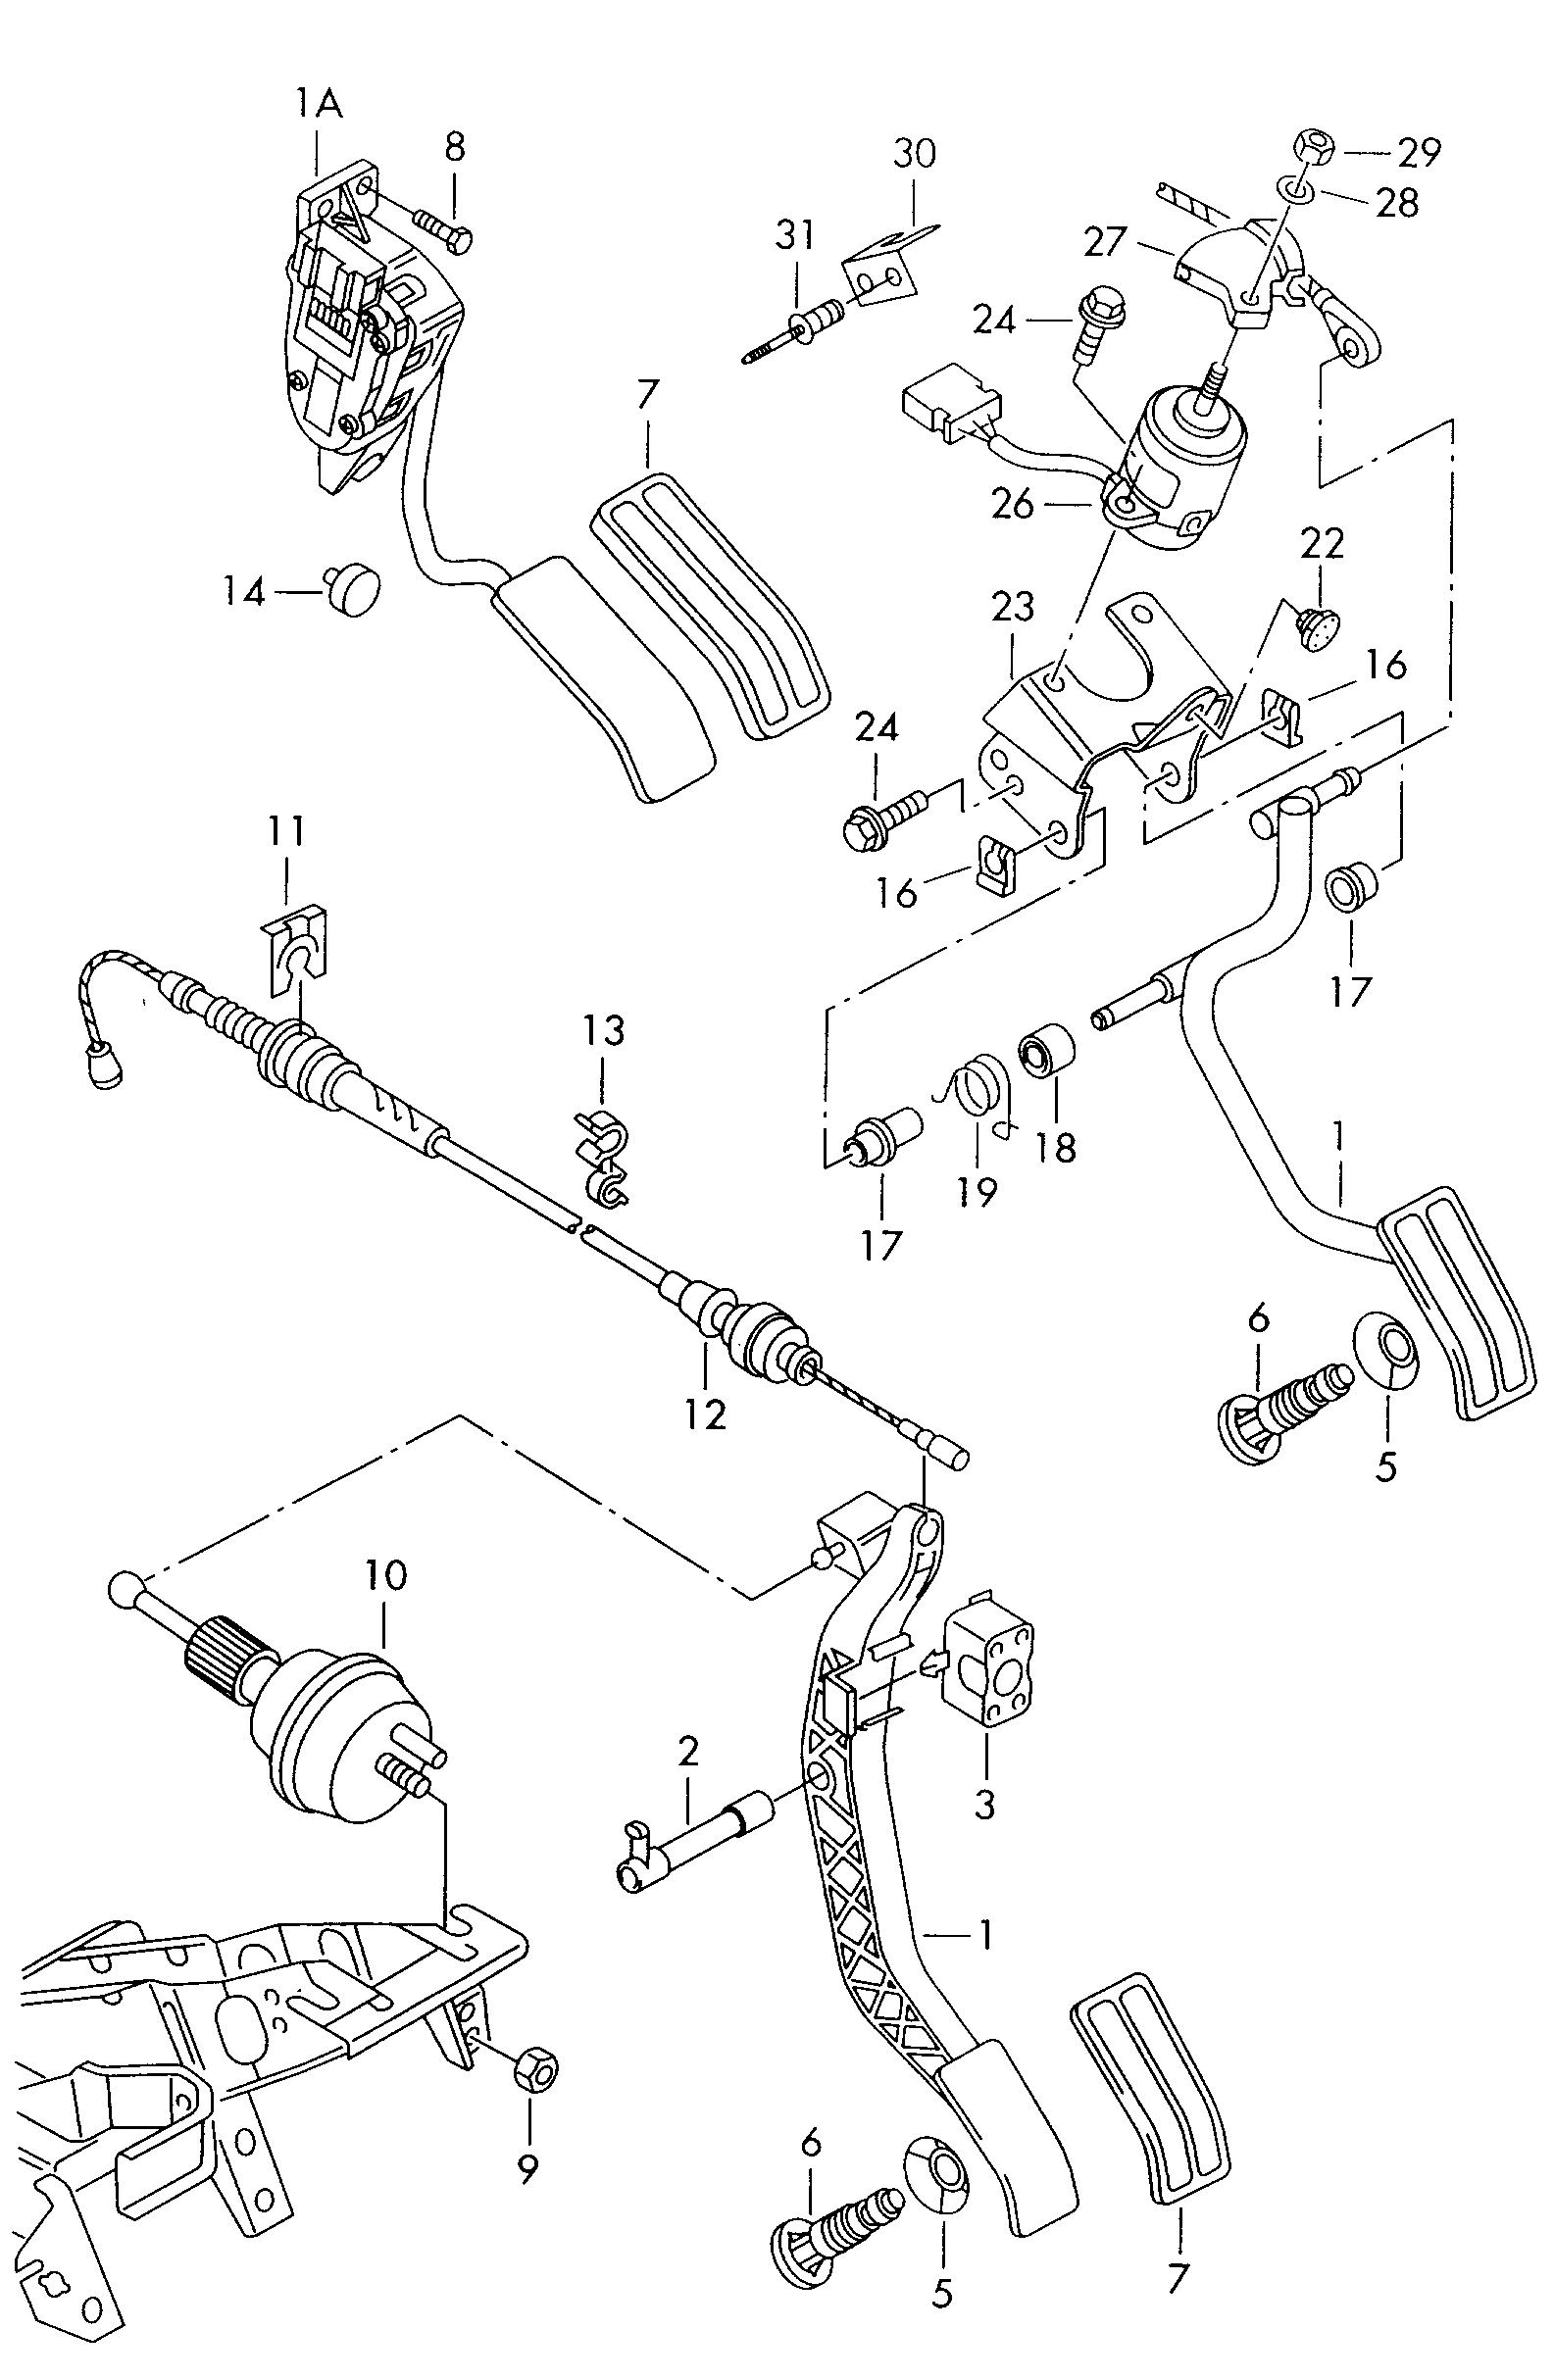 pedal acelerador; cable acelerador - Alhambra(AL)  